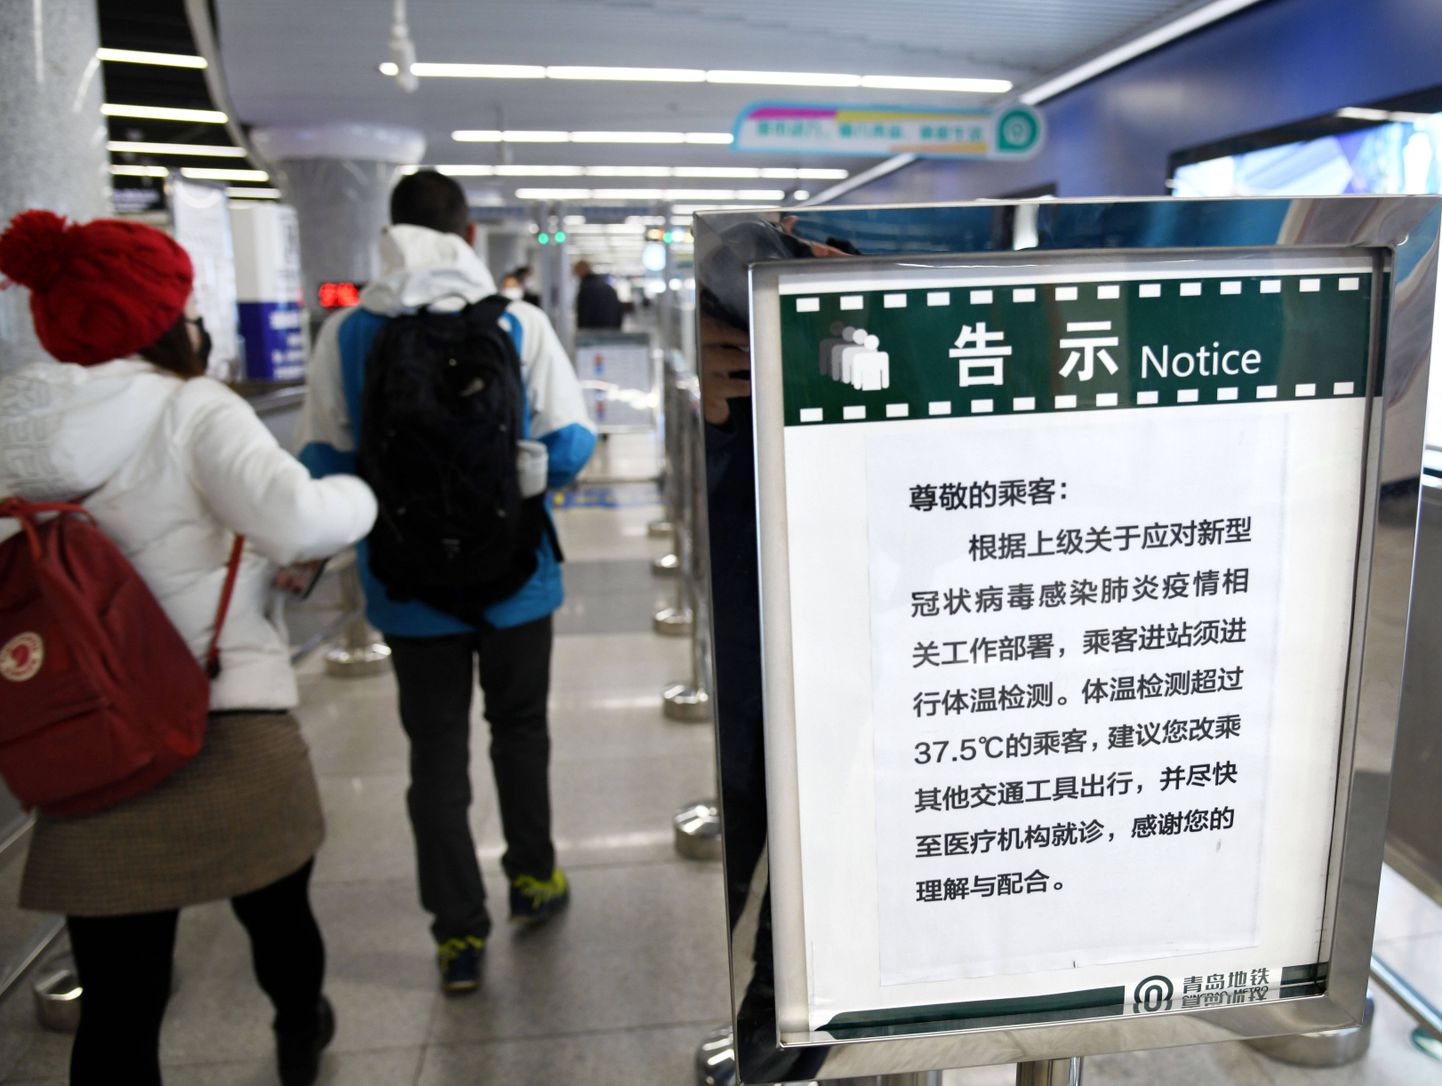 Teade Qingdao linnas Shandongi provintsis, et metroojaamas jälgitakse kõigi reisijate kehatemperatuuri seoses koroonaviiruse levikuga.